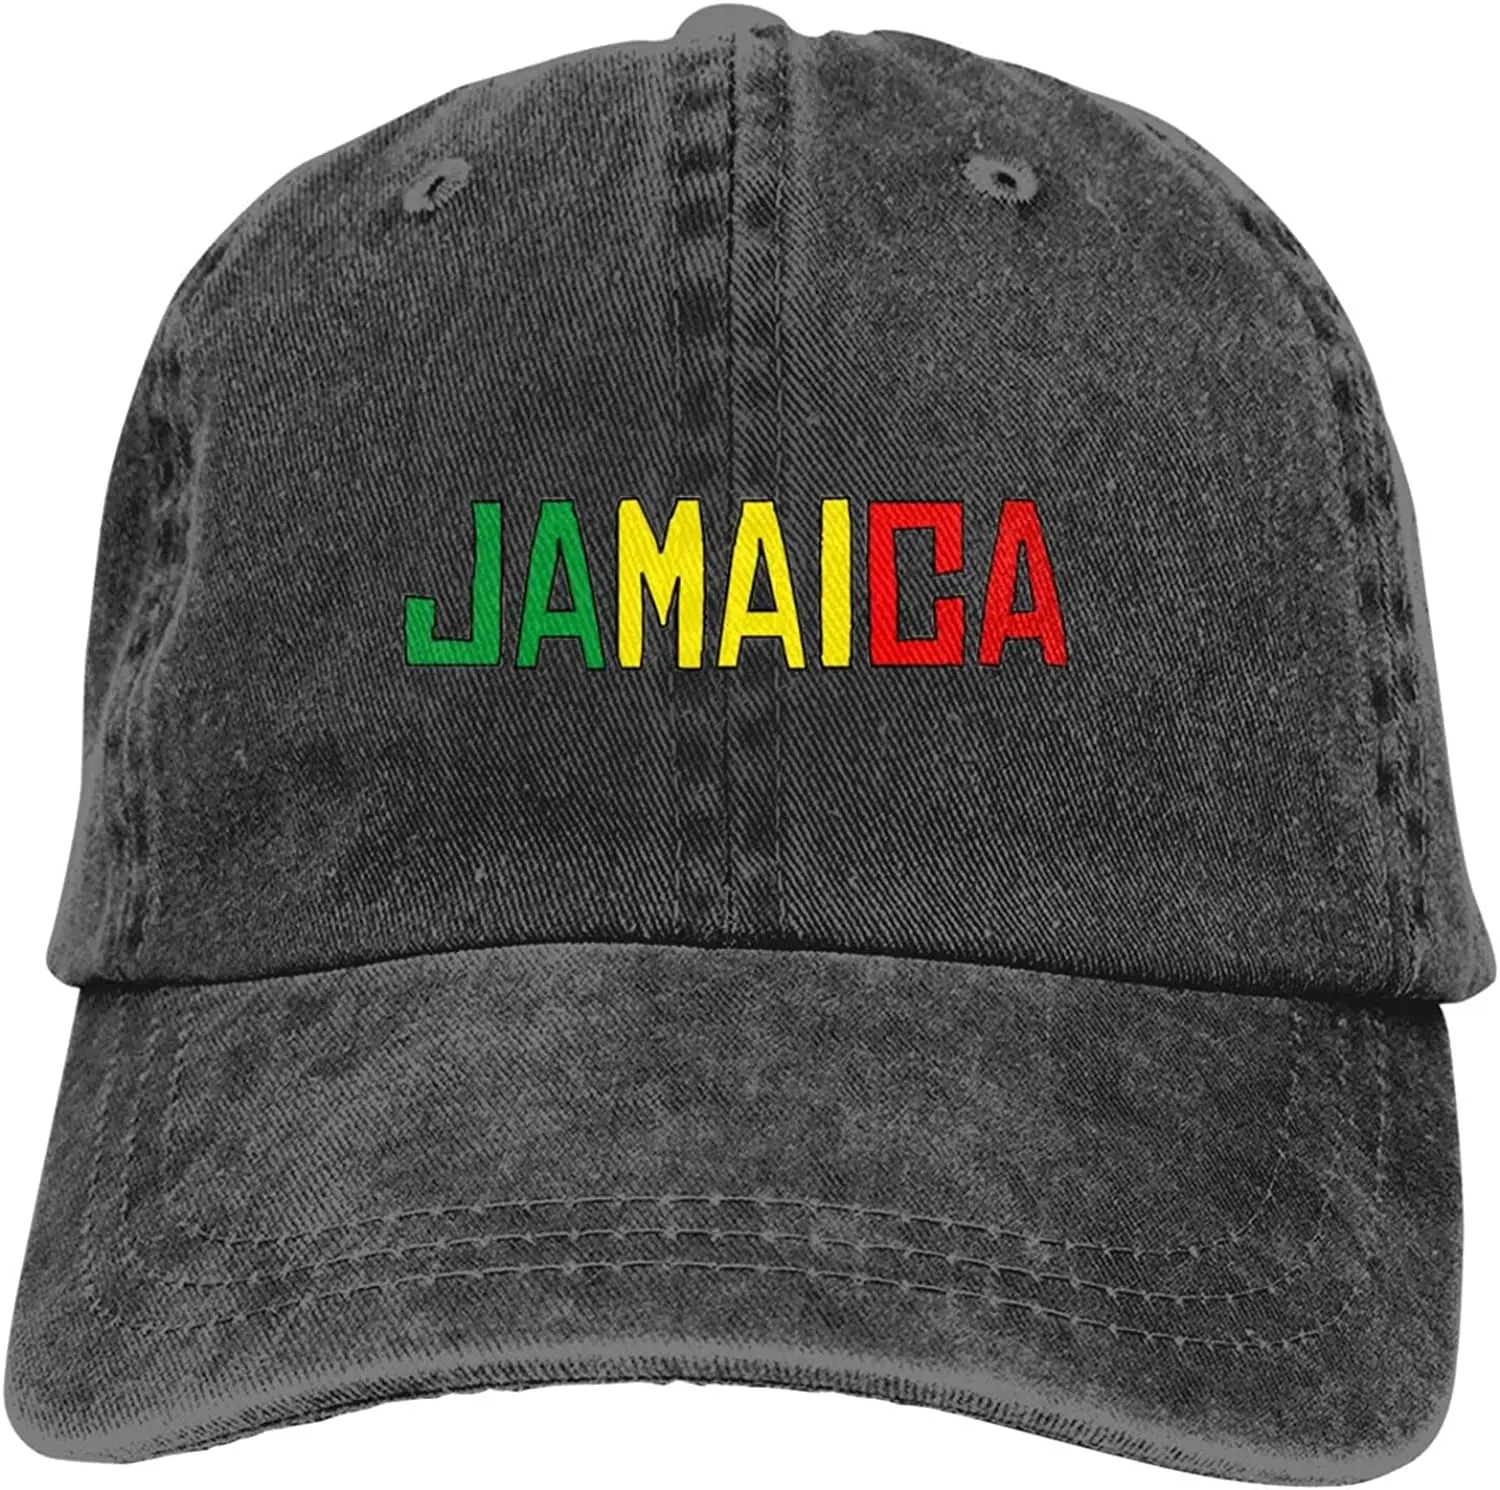 Ямайка с флагом Ямайки Джинсовые Шапки для Мужчин И Женщин, Бейсболки, Черные Шляпы Four Seasons, Унисекс, Джинсовые Шапки для взрослых